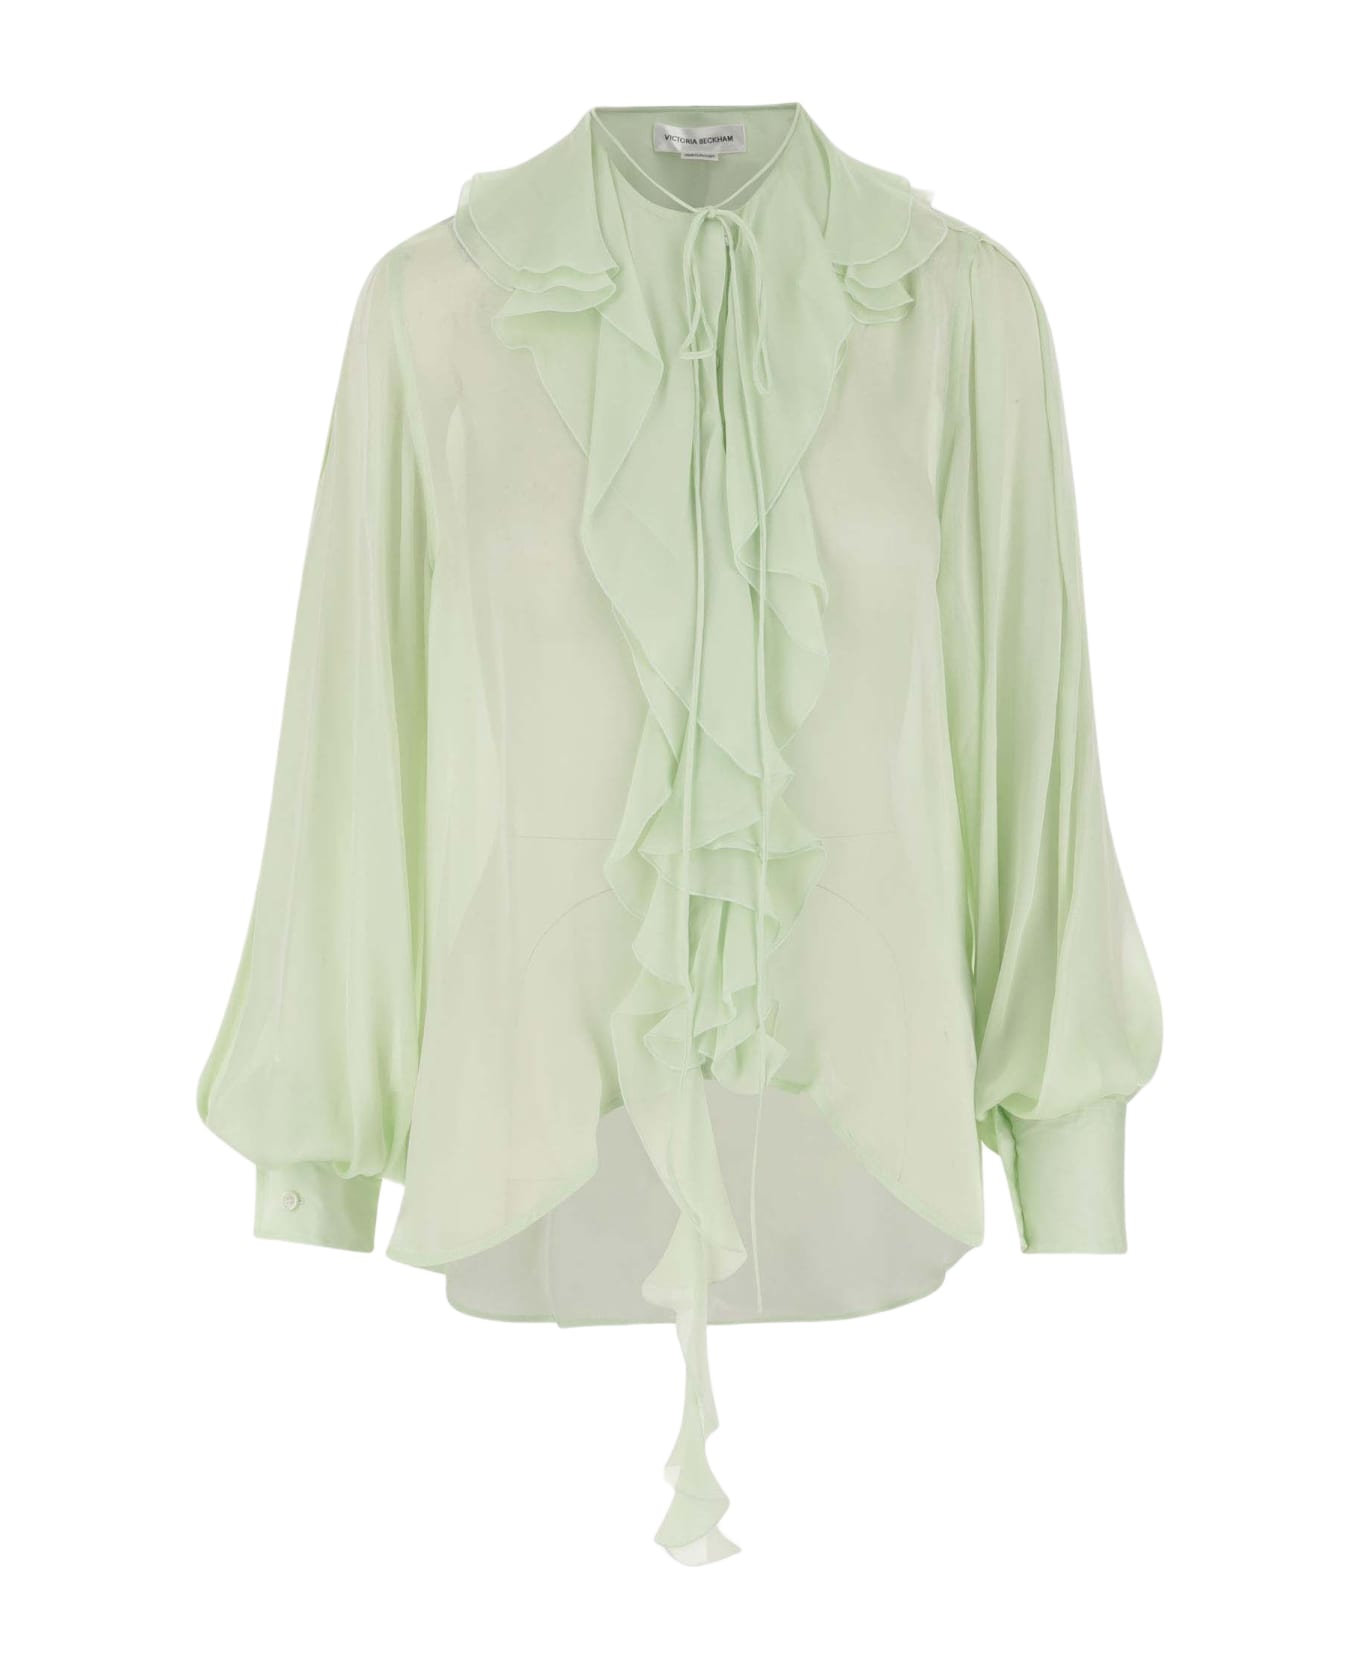 Victoria Beckham Silk Shirt With Ruffles - Green